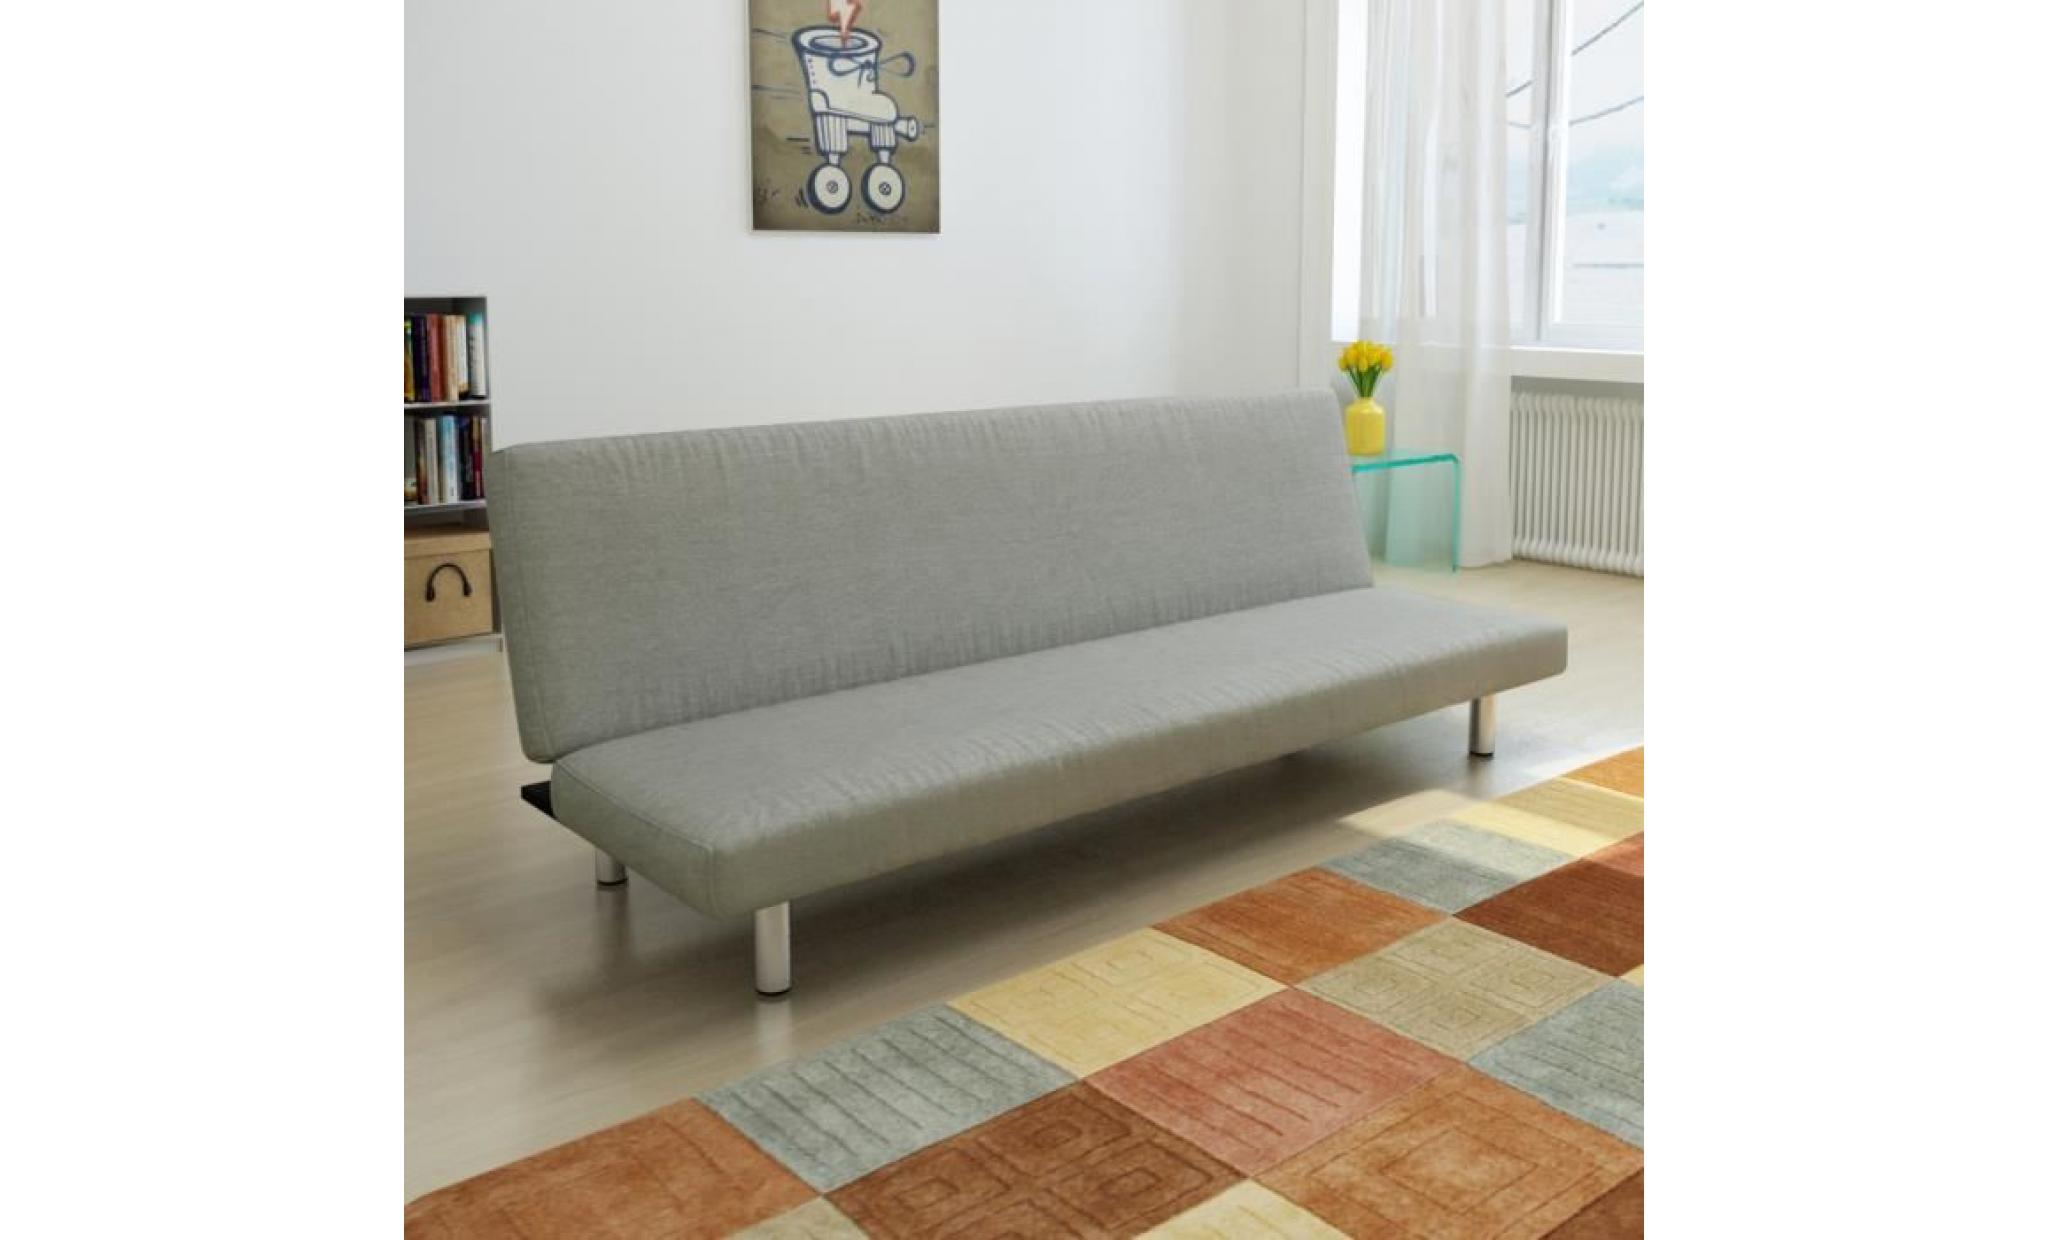 canapé lit inclinable 3 positions clic clac en contreplaqué + tissu pour intérieur maison gris clair